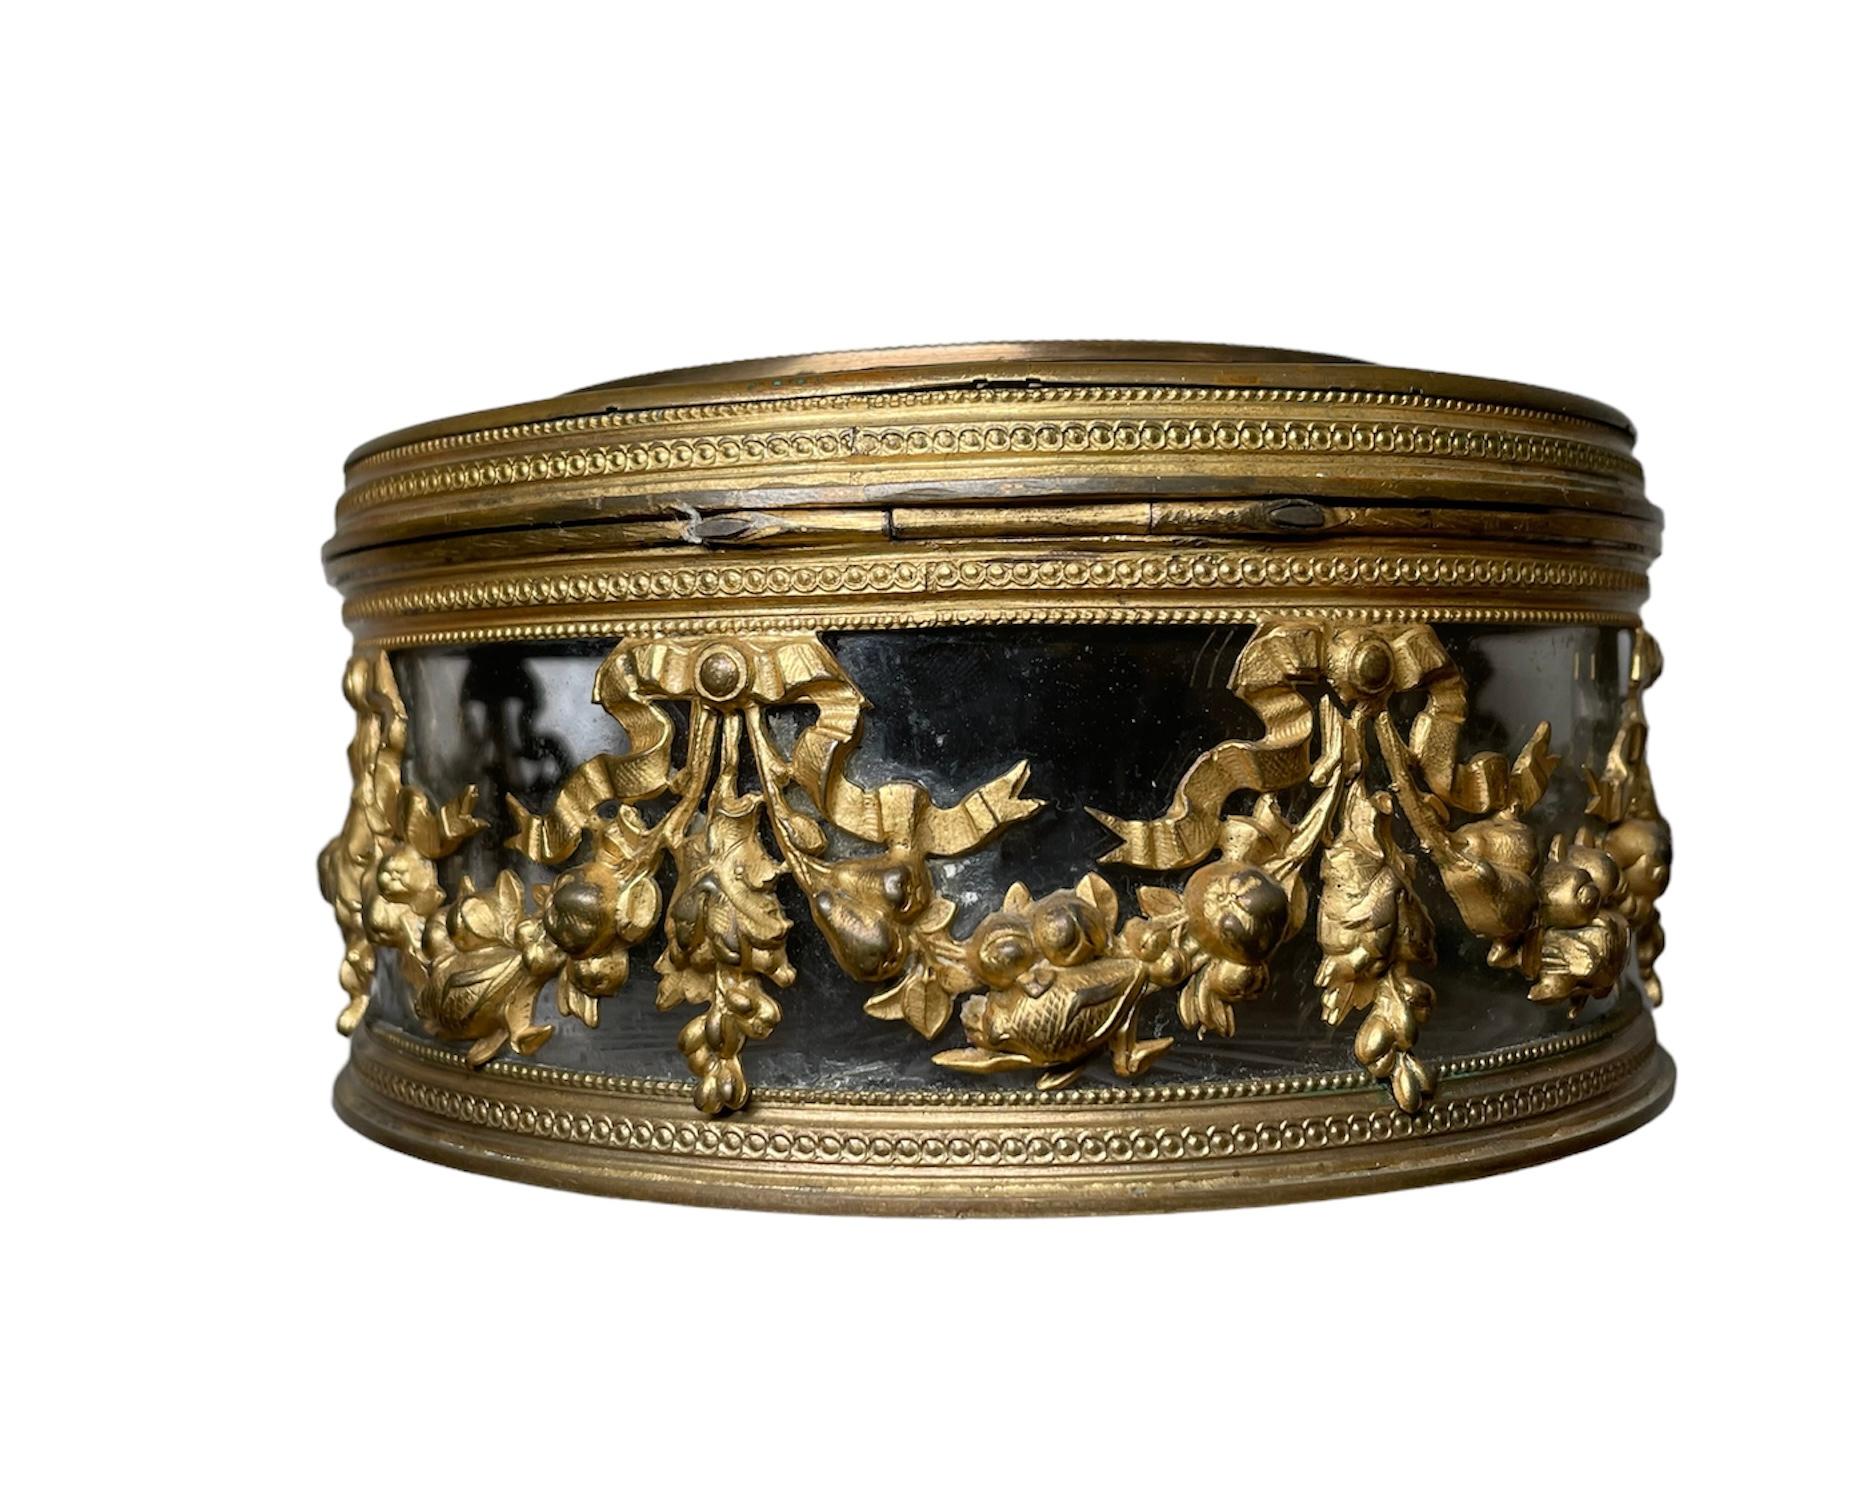 Il s'agit d'un pot/boîte rond en verre poudré recouvert de métal bronze français. Elle représente une jarre en verre à couvercle articulé, décorée d'une longue guirlande dorée de nœuds et de fleurs et de perles fines. Le couvercle est également orné